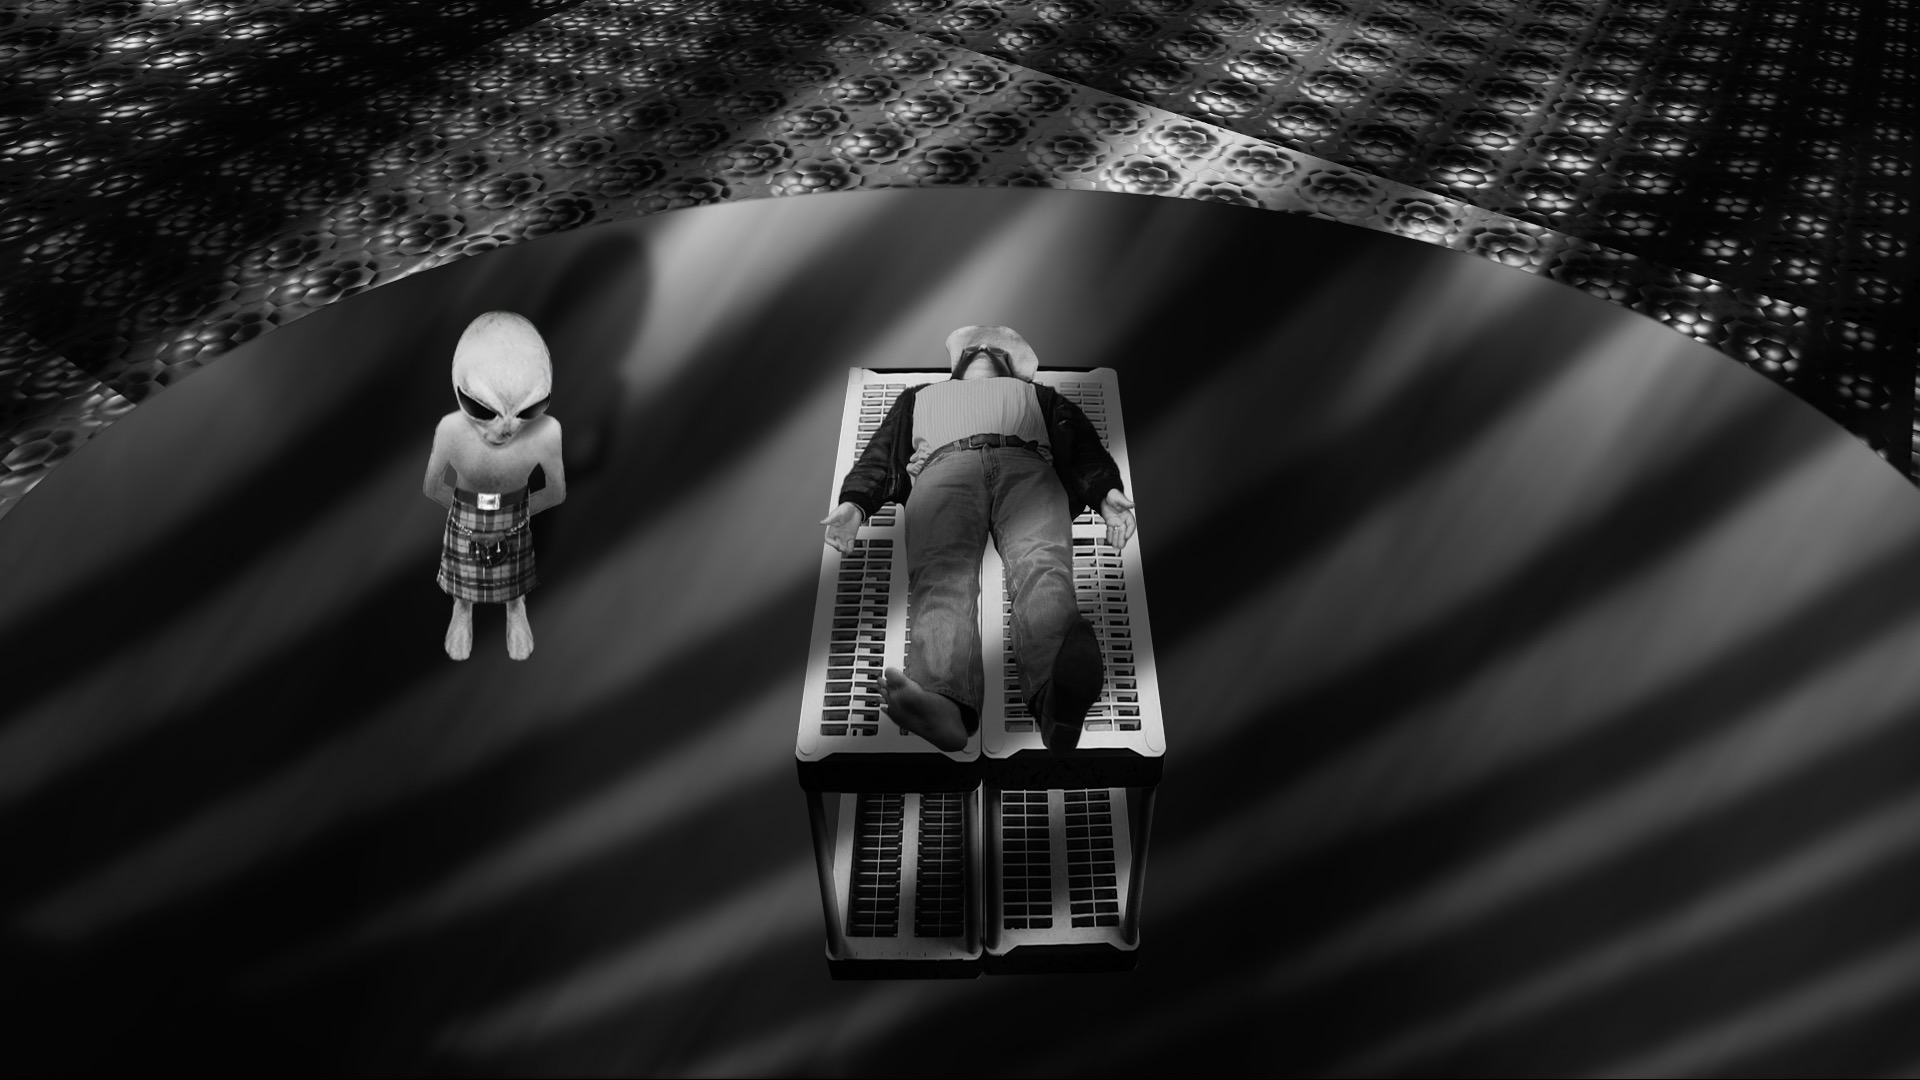 Alien wearing a kilt, checking Clem Junebug. From Clem JunebugGhost Detective.